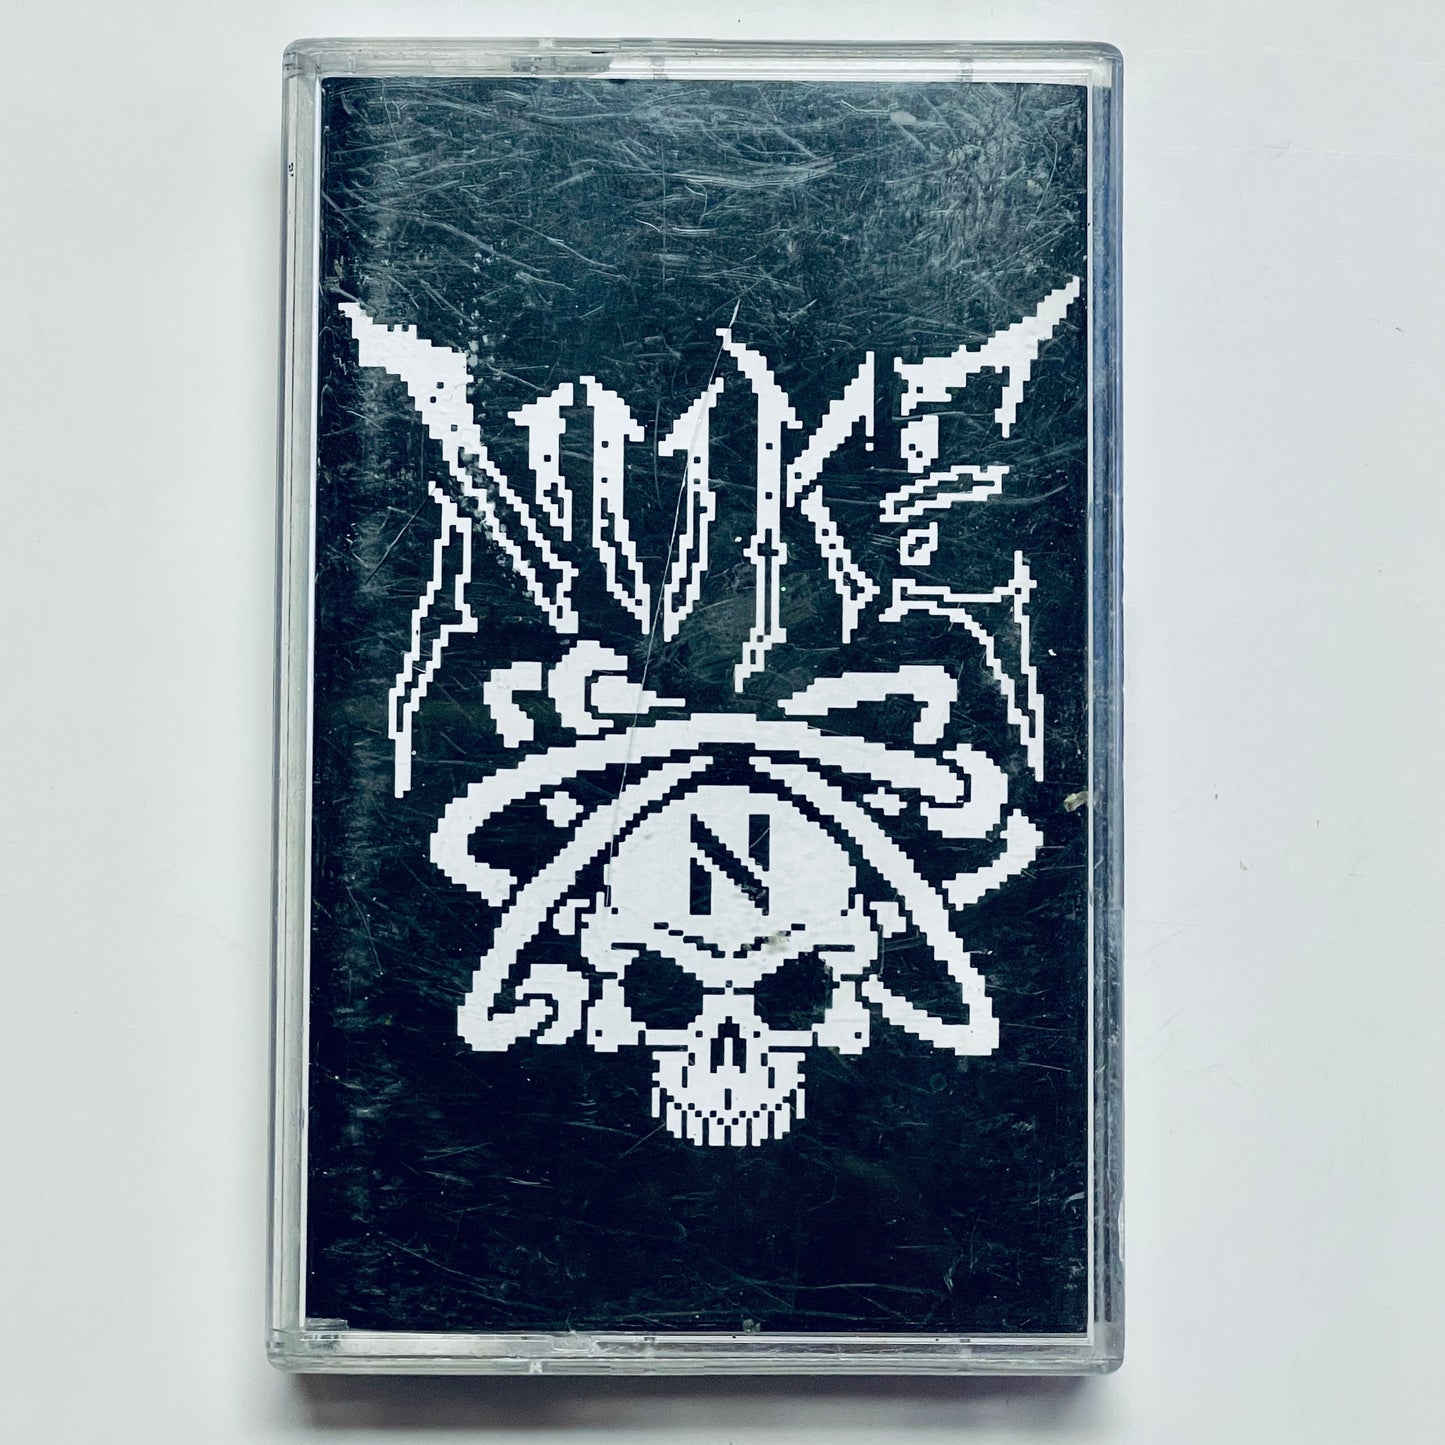 Nuke - Nuke cassette tape (used)